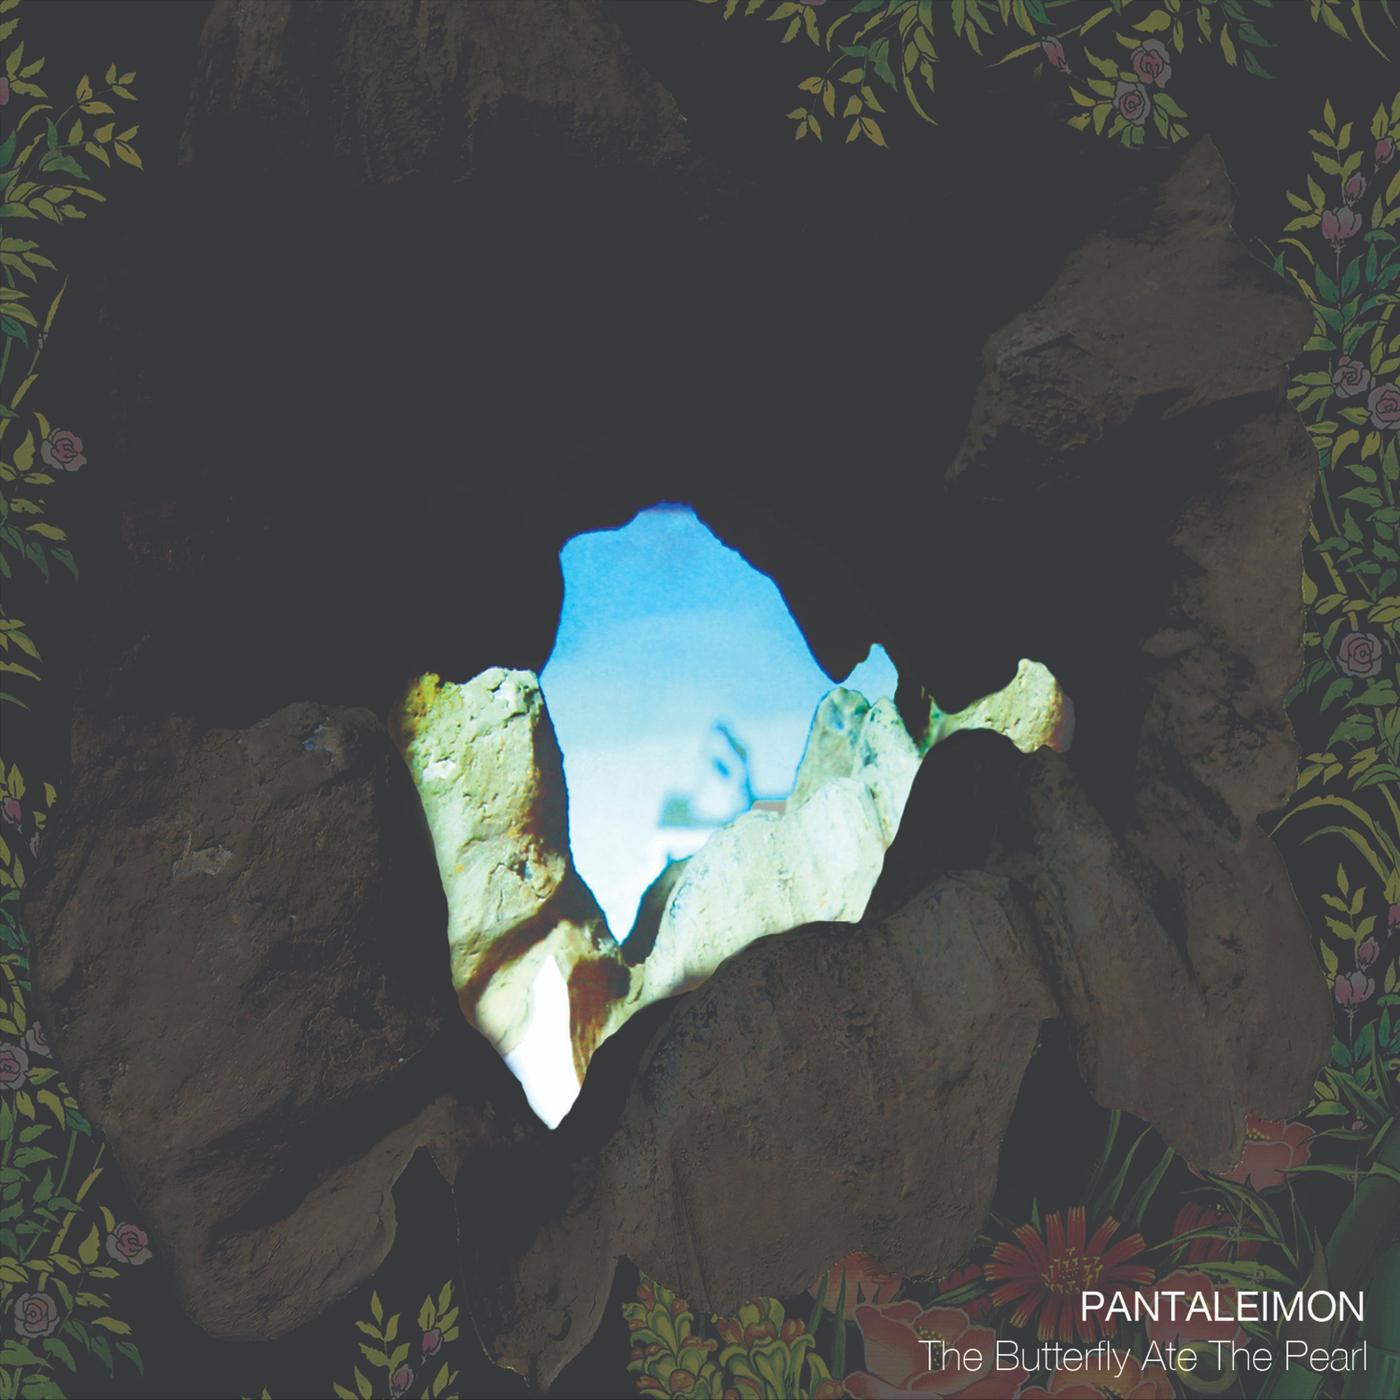 Pantaleimon - If I (Was)